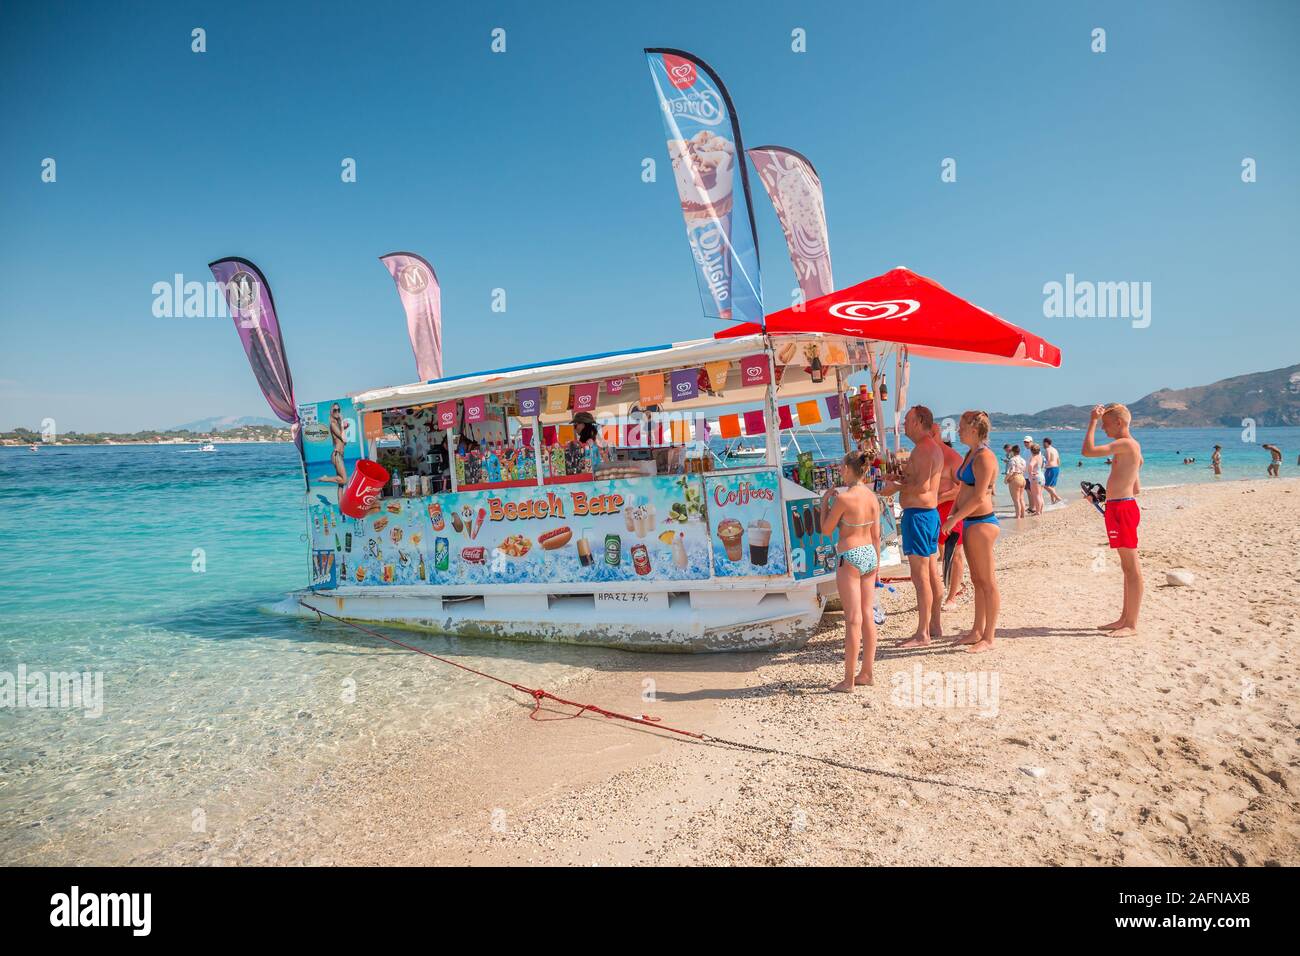 Zakynthos, Grecia, Isla Tortuga - Agosto 2019: tienda de barco flotante con frutas, helados y bocadillos diversos drinkg vendido desde pequeños botes, en Grecia Foto de stock